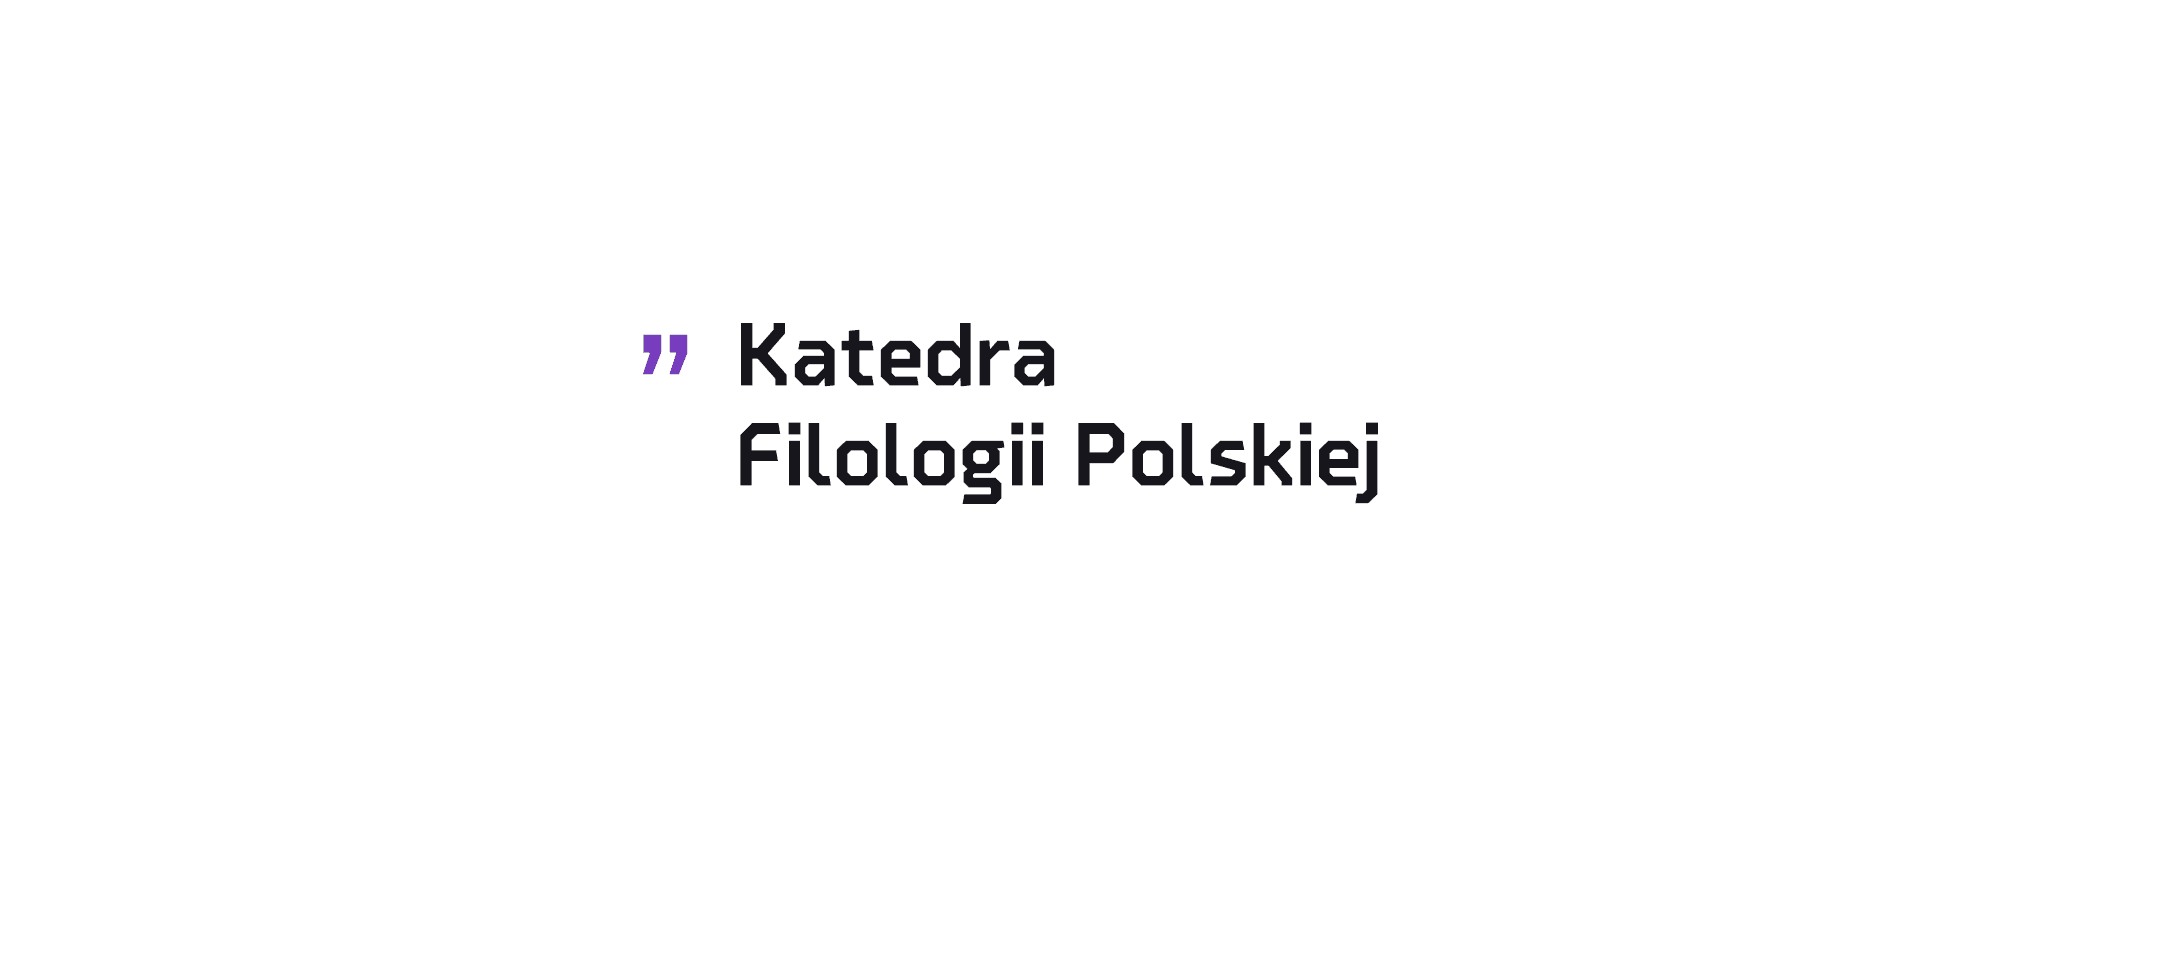 Katedra Filologii Polskiej zaprasza na BEZPŁATNE warsztaty dla maturzystów z języka polskiego